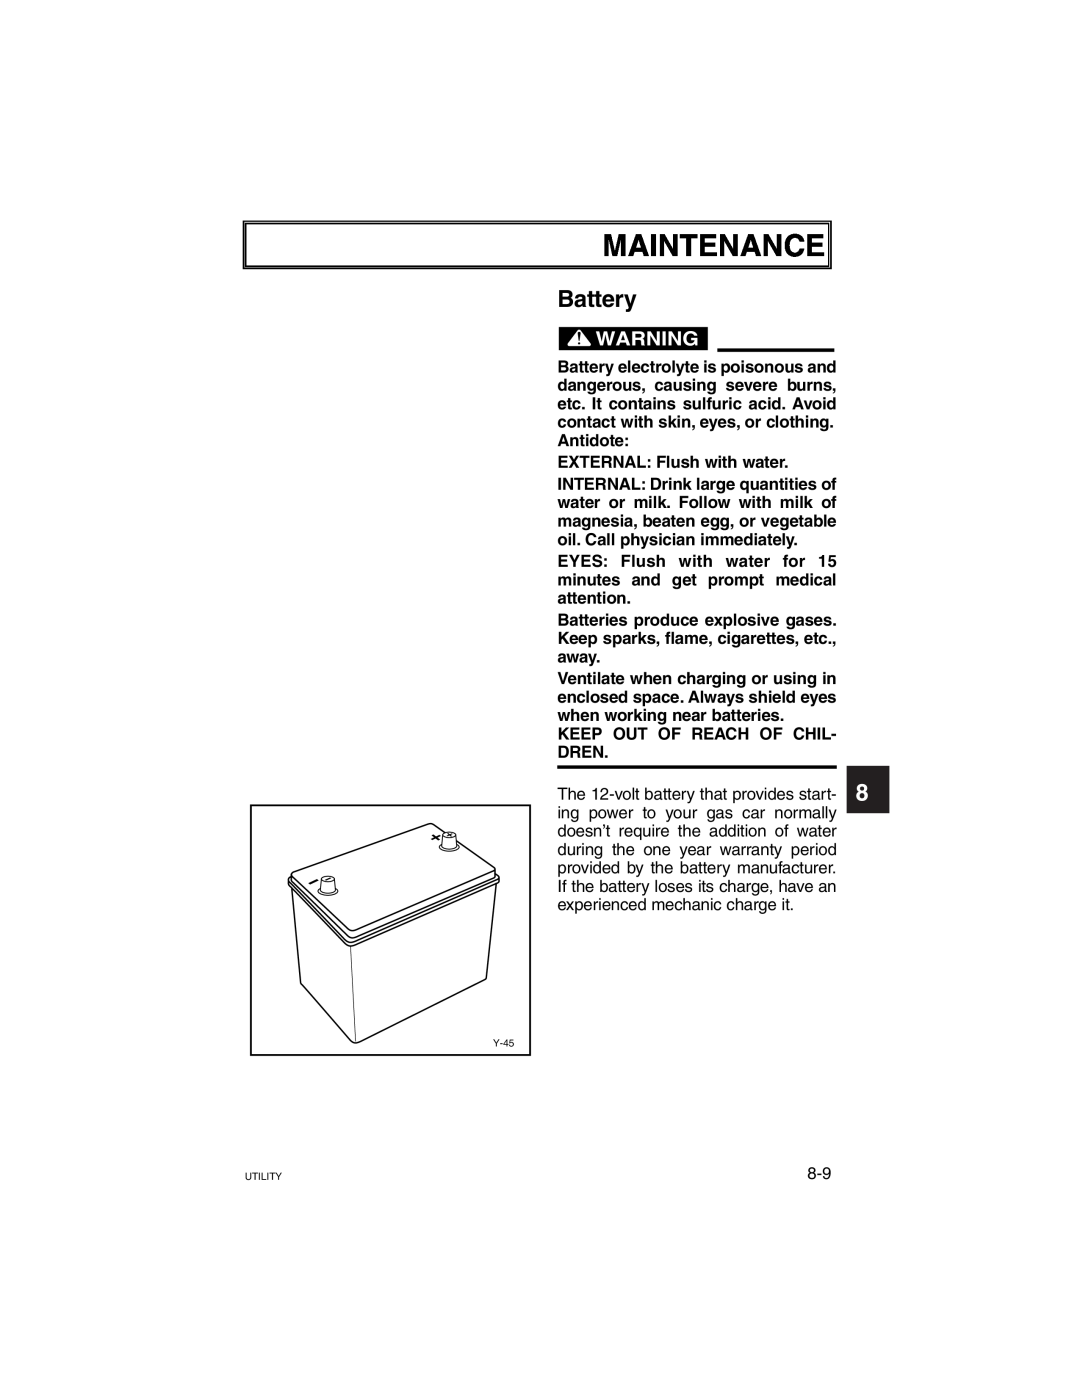 Yamaha G21A manual Maintenance, Battery 